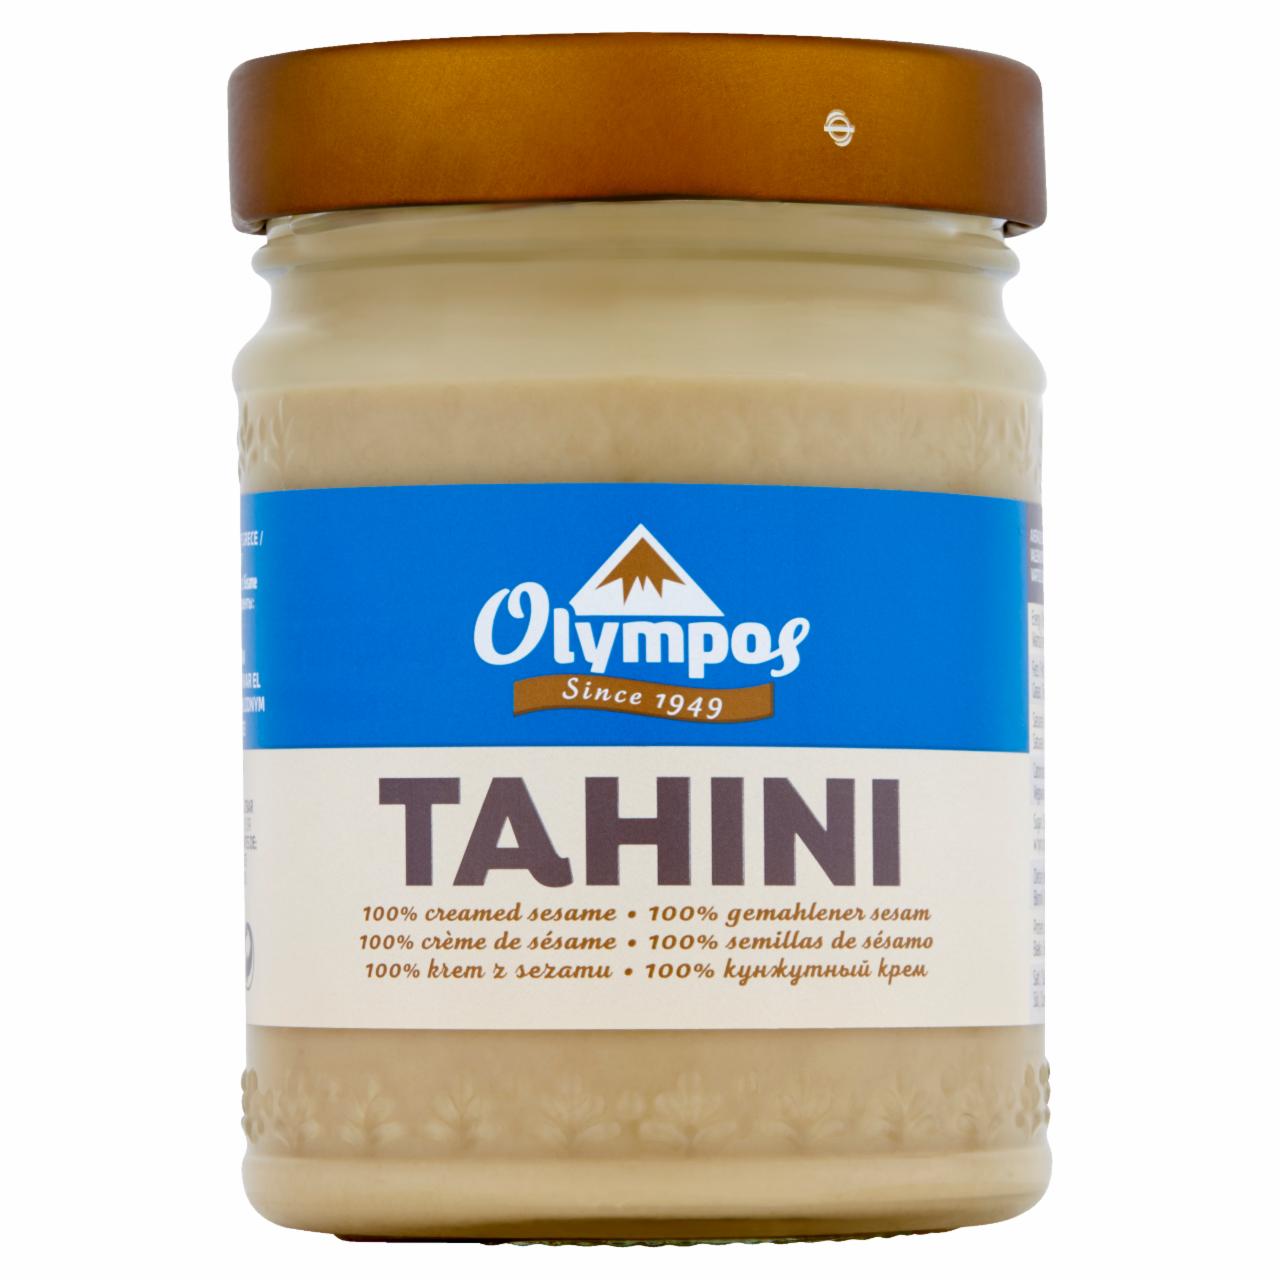 Zdjęcia - Olympos Pasta sezamowa Tahini 300 g